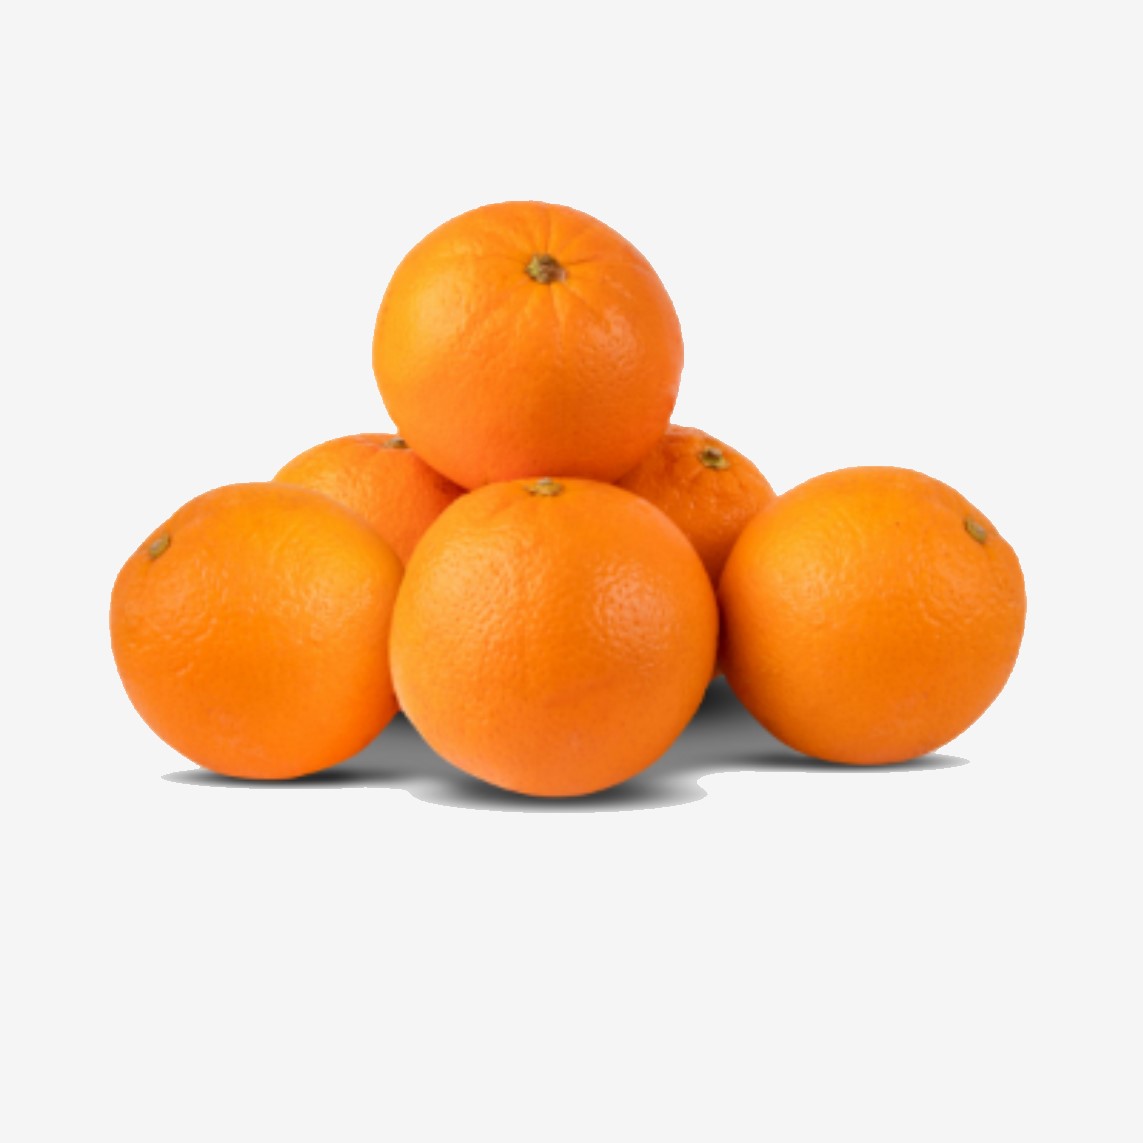 پرتقال تامسون شمال عرضه شده در فروشگاه اینترنتی گل میوه